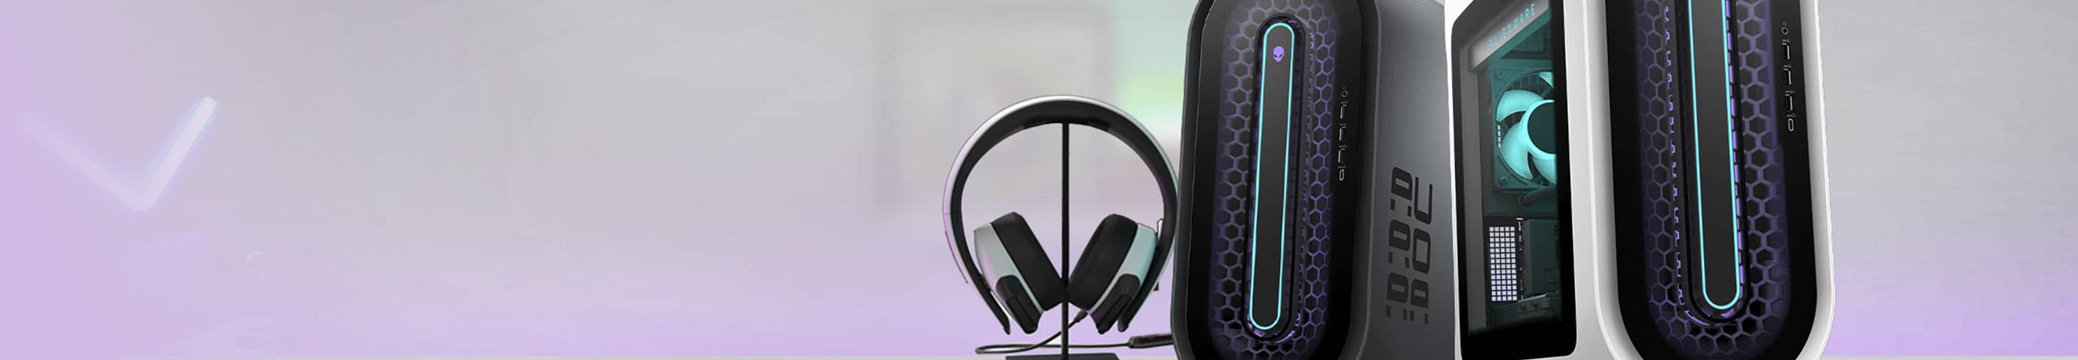 Imagen de unos audifonos gaimer color blancos y dos cpu Alienware, uno color negro y el otro color blanco, Marcas DELL